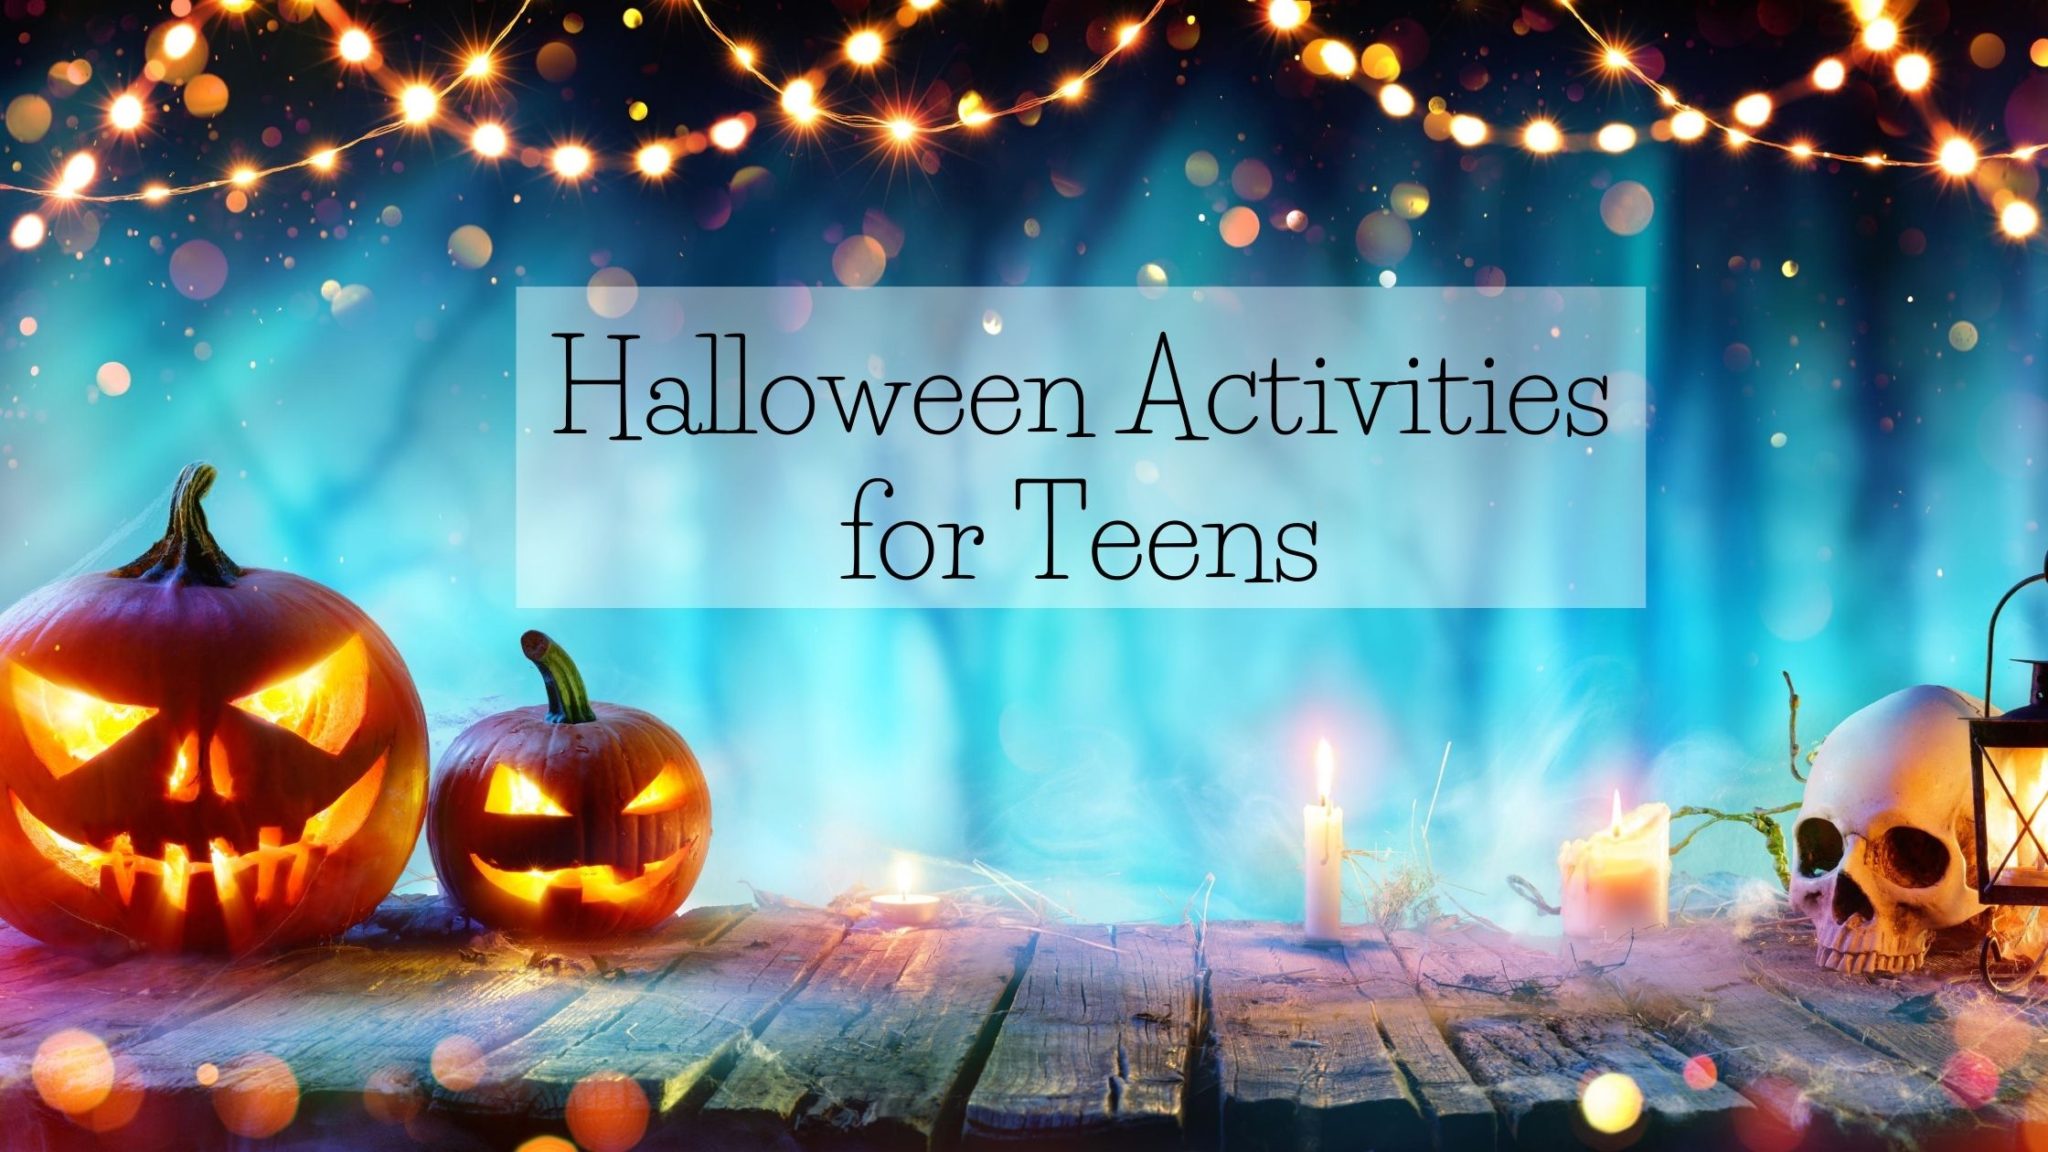 6 Spooktacular Halloween Activities for Teens The Secret Life of